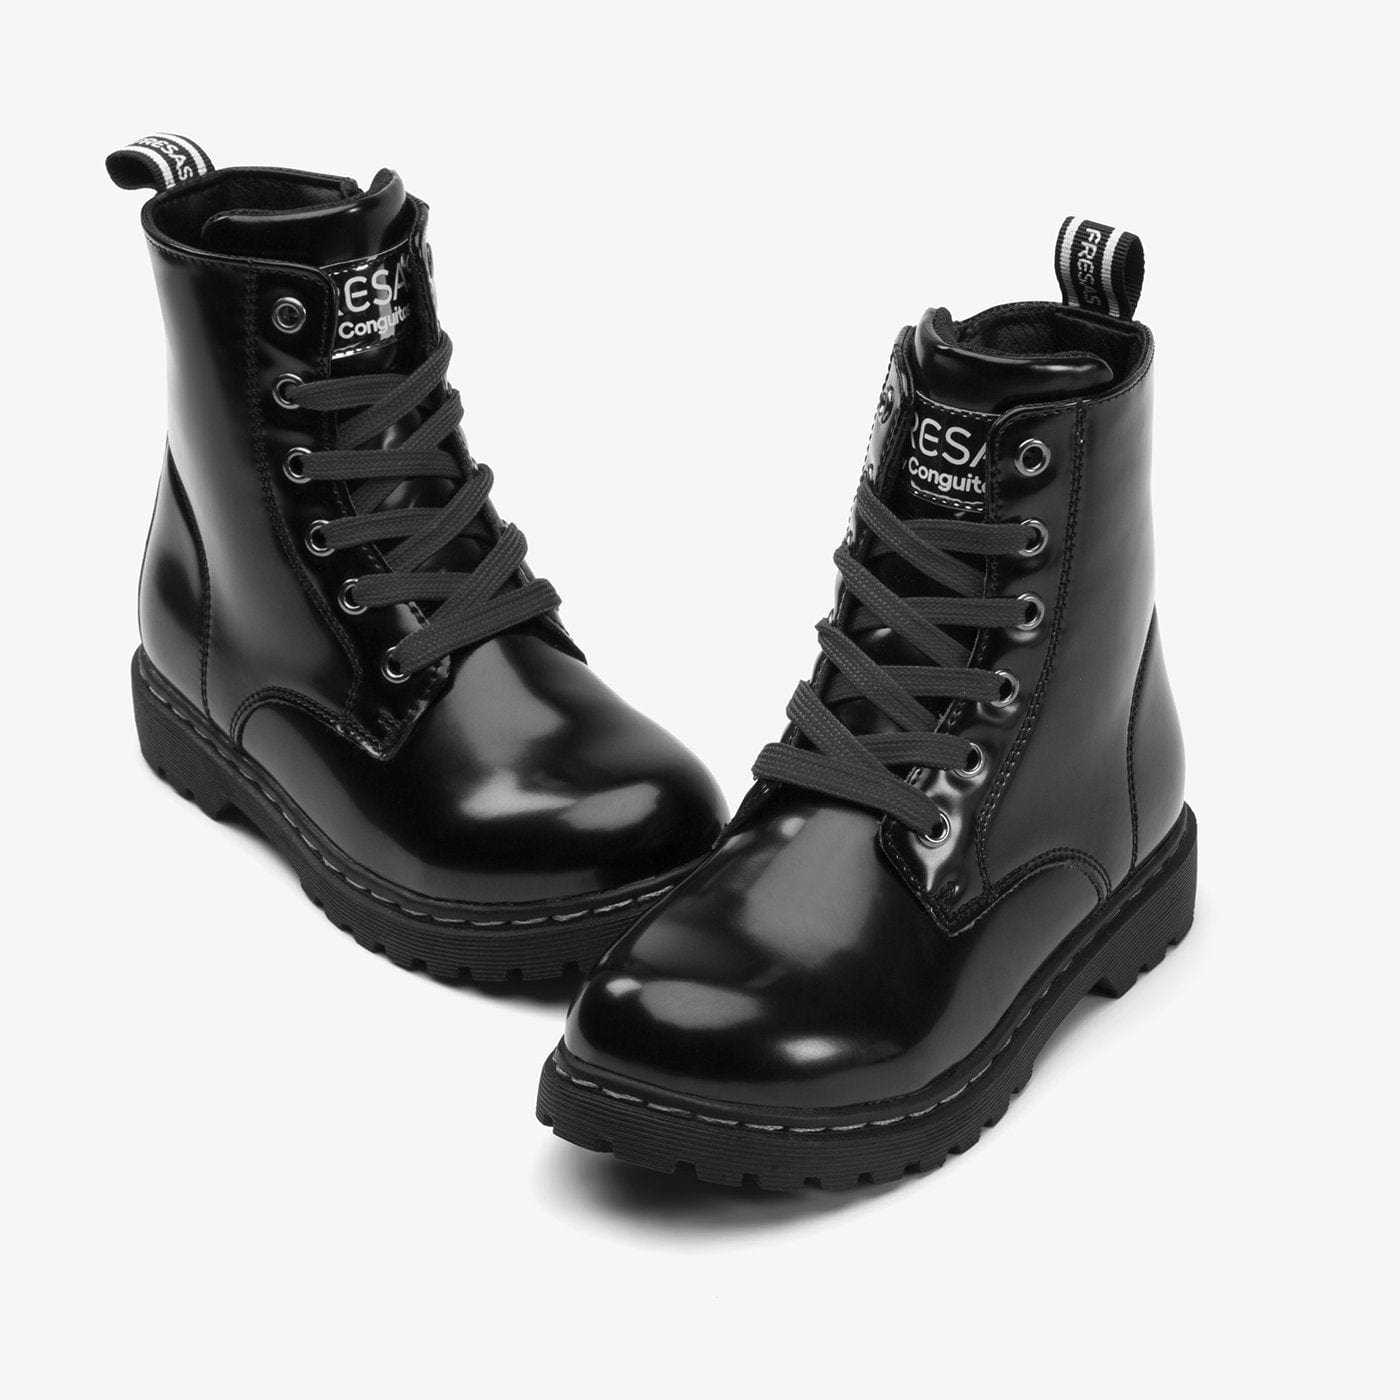 FRESAS CON NATA Shoes Children's Black Antik Boots